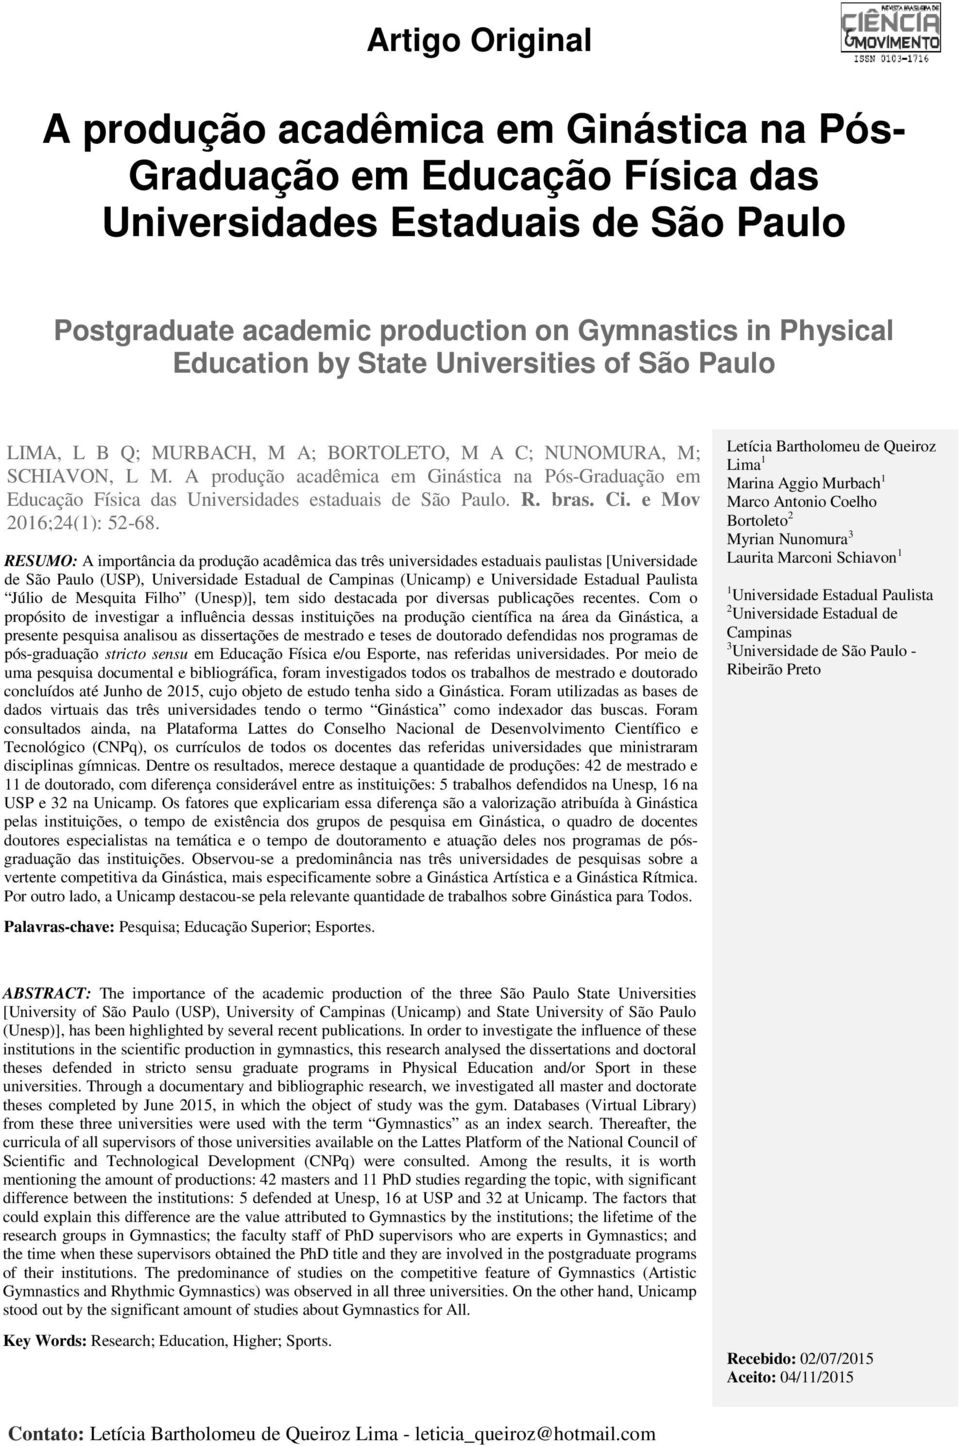 A produção acadêmica em Ginástica na Pós-Graduação em Educação Física das Universidades estaduais de São Paulo. R. bras. Ci. e Mov 2016;24(1): 52-68.